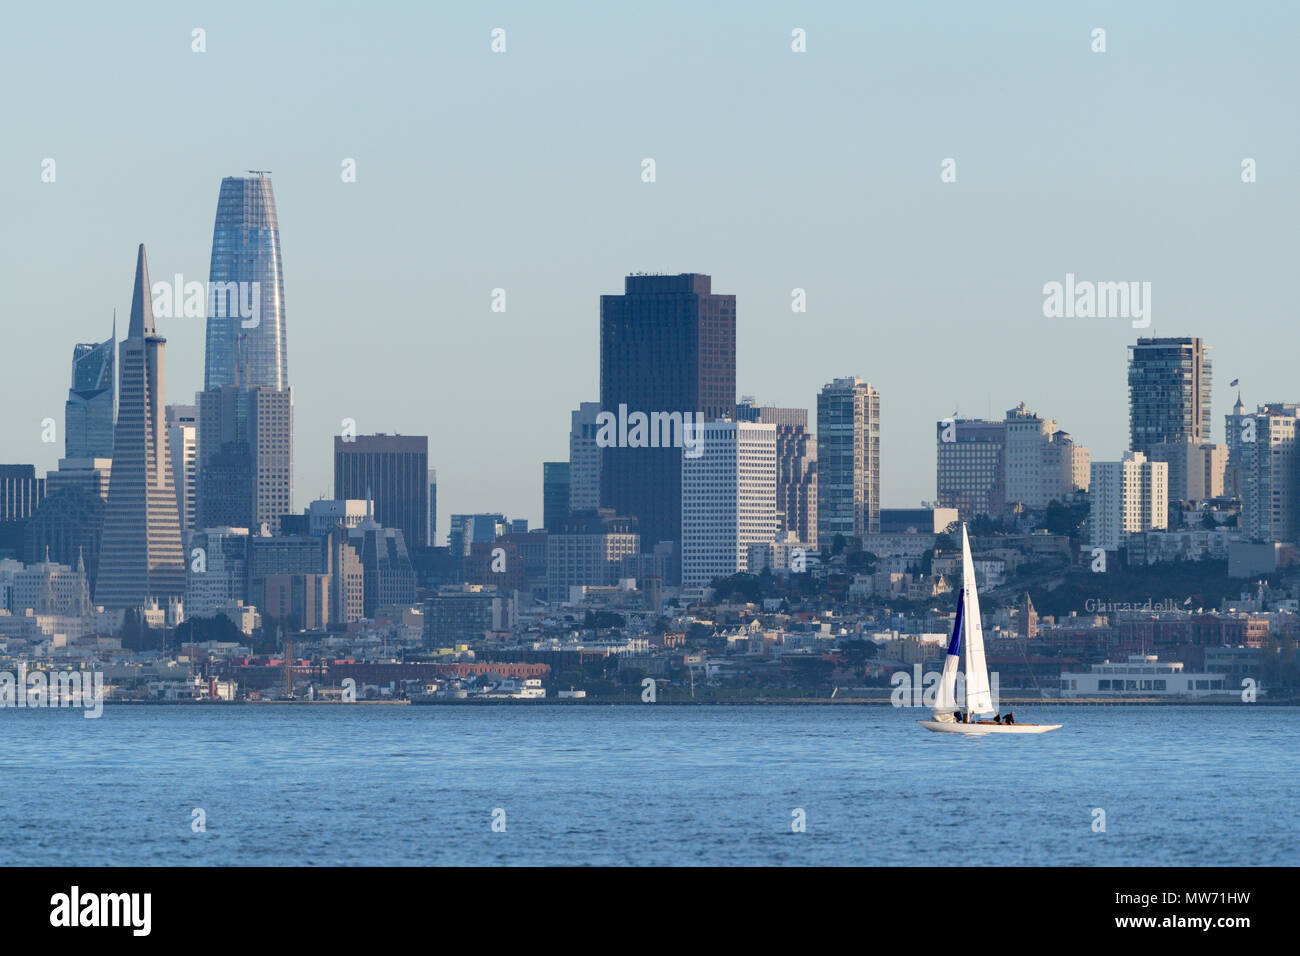 Skyline di San Francisco come si vede dall'acqua con barca a vela. Foto Stock